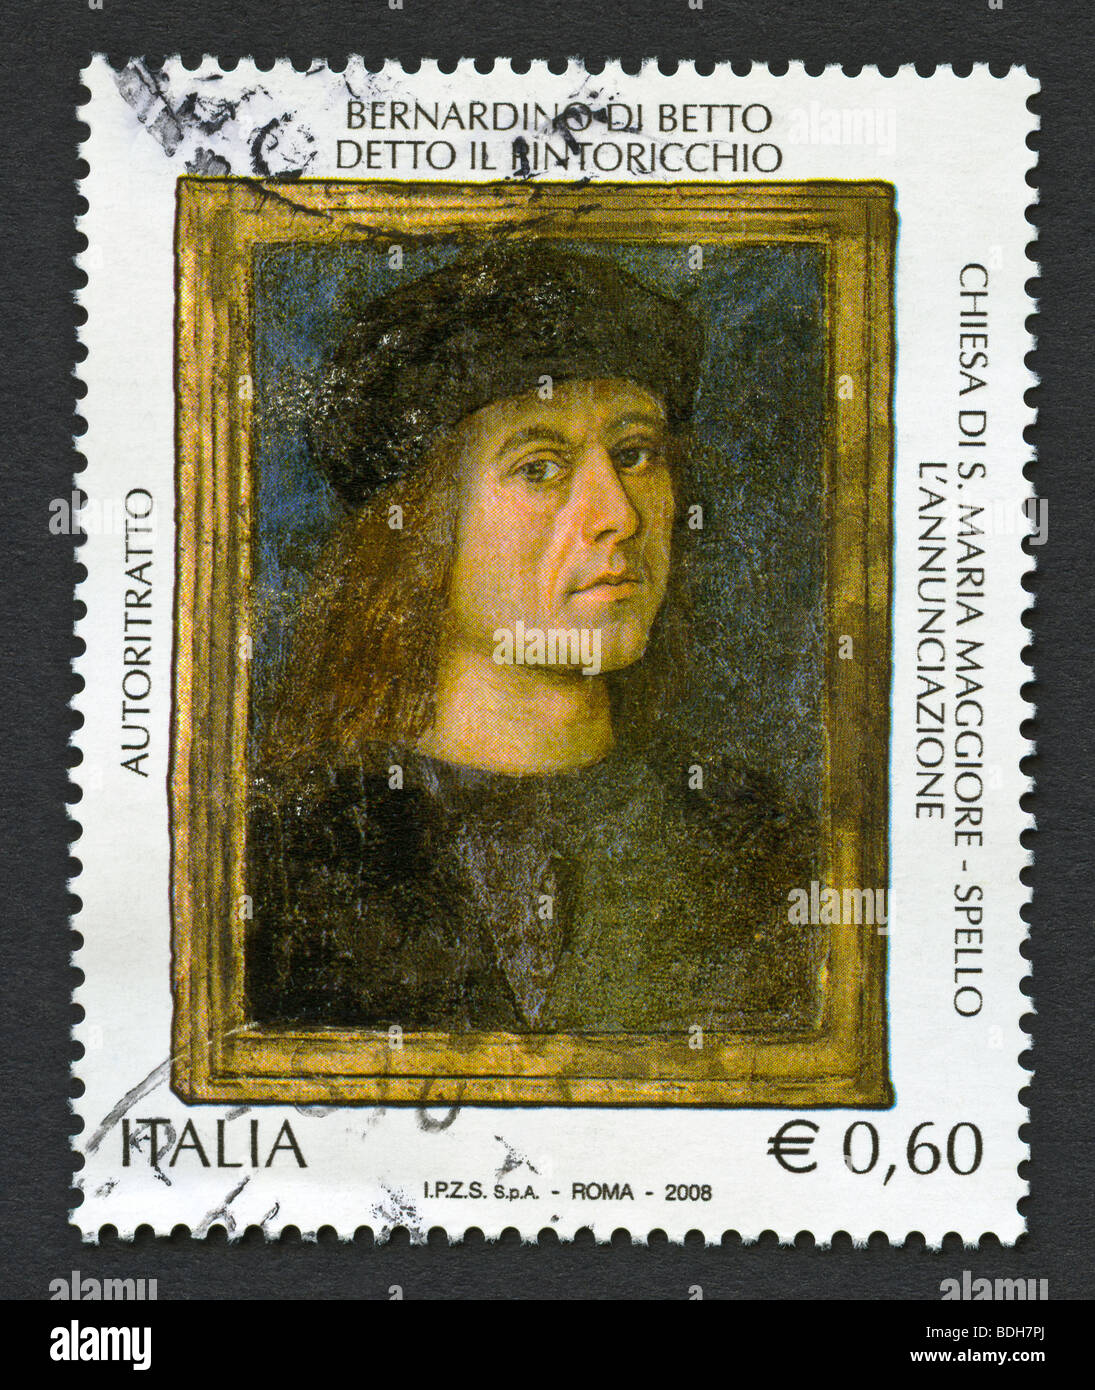 Pinturicchio - Bernardino Di Betto - Italian postage stamp Stock Photo